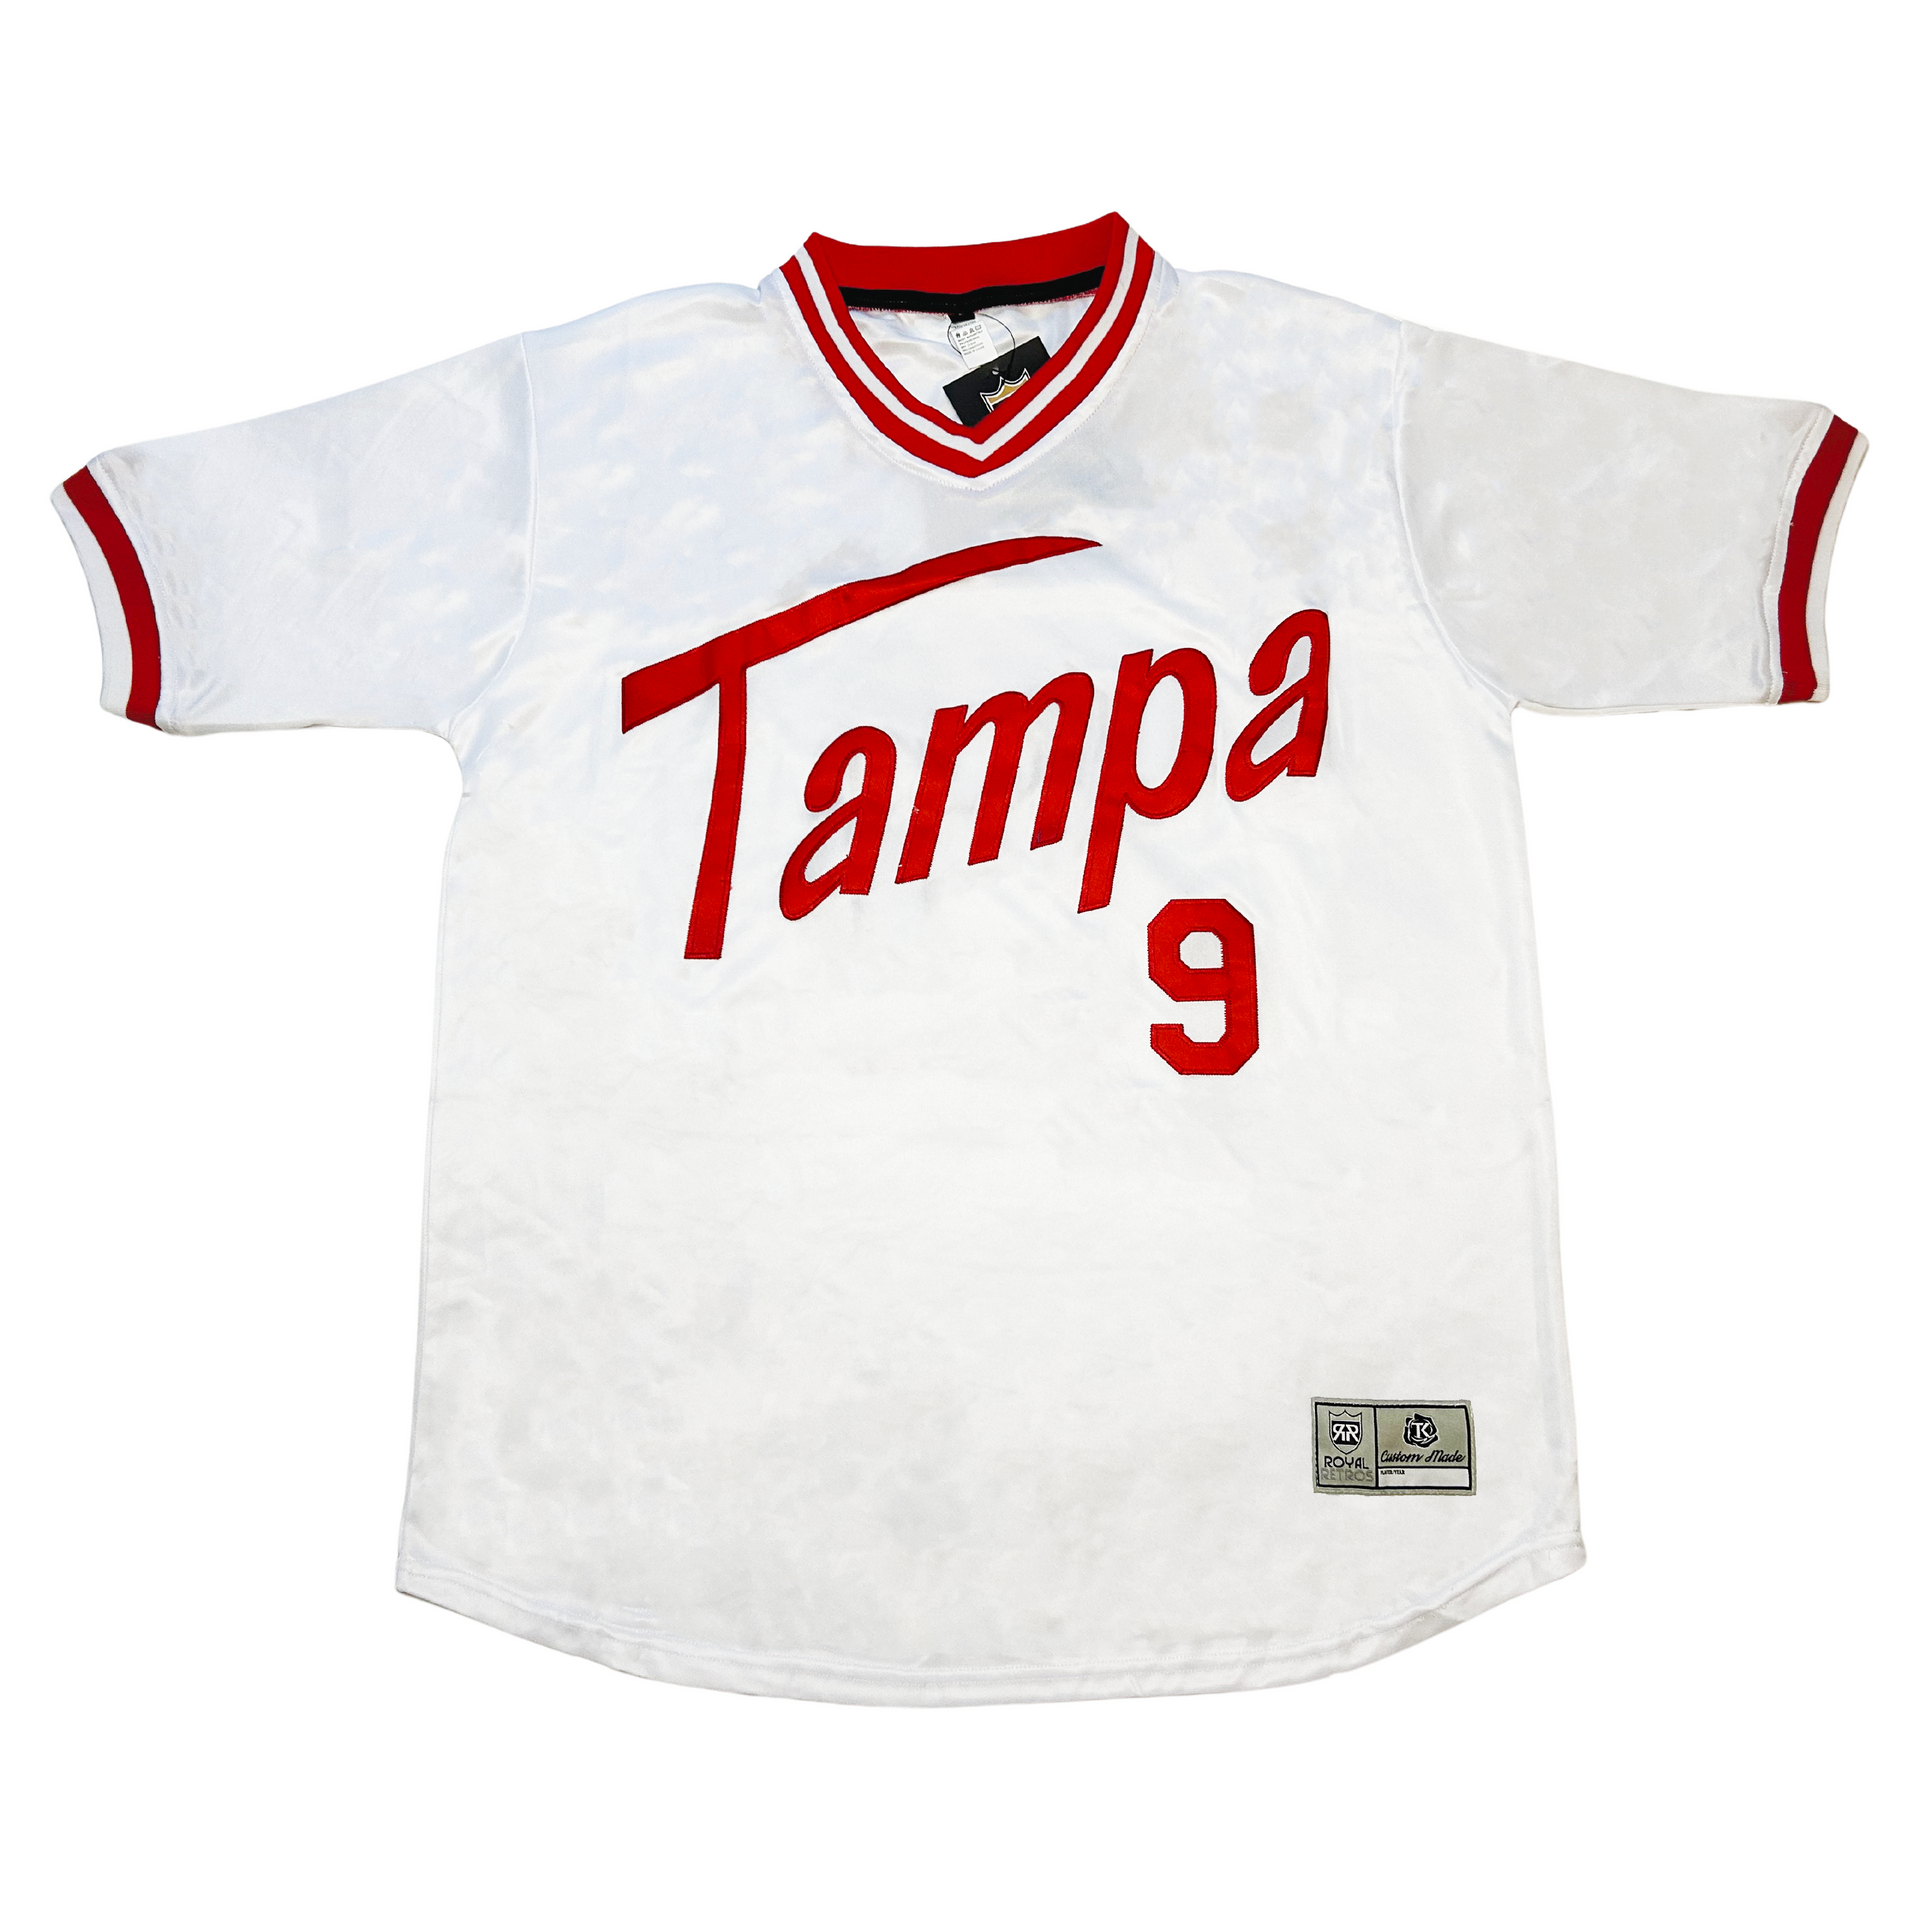 Tampa Tarpons Jersey - White - 4XL - Royal Retros